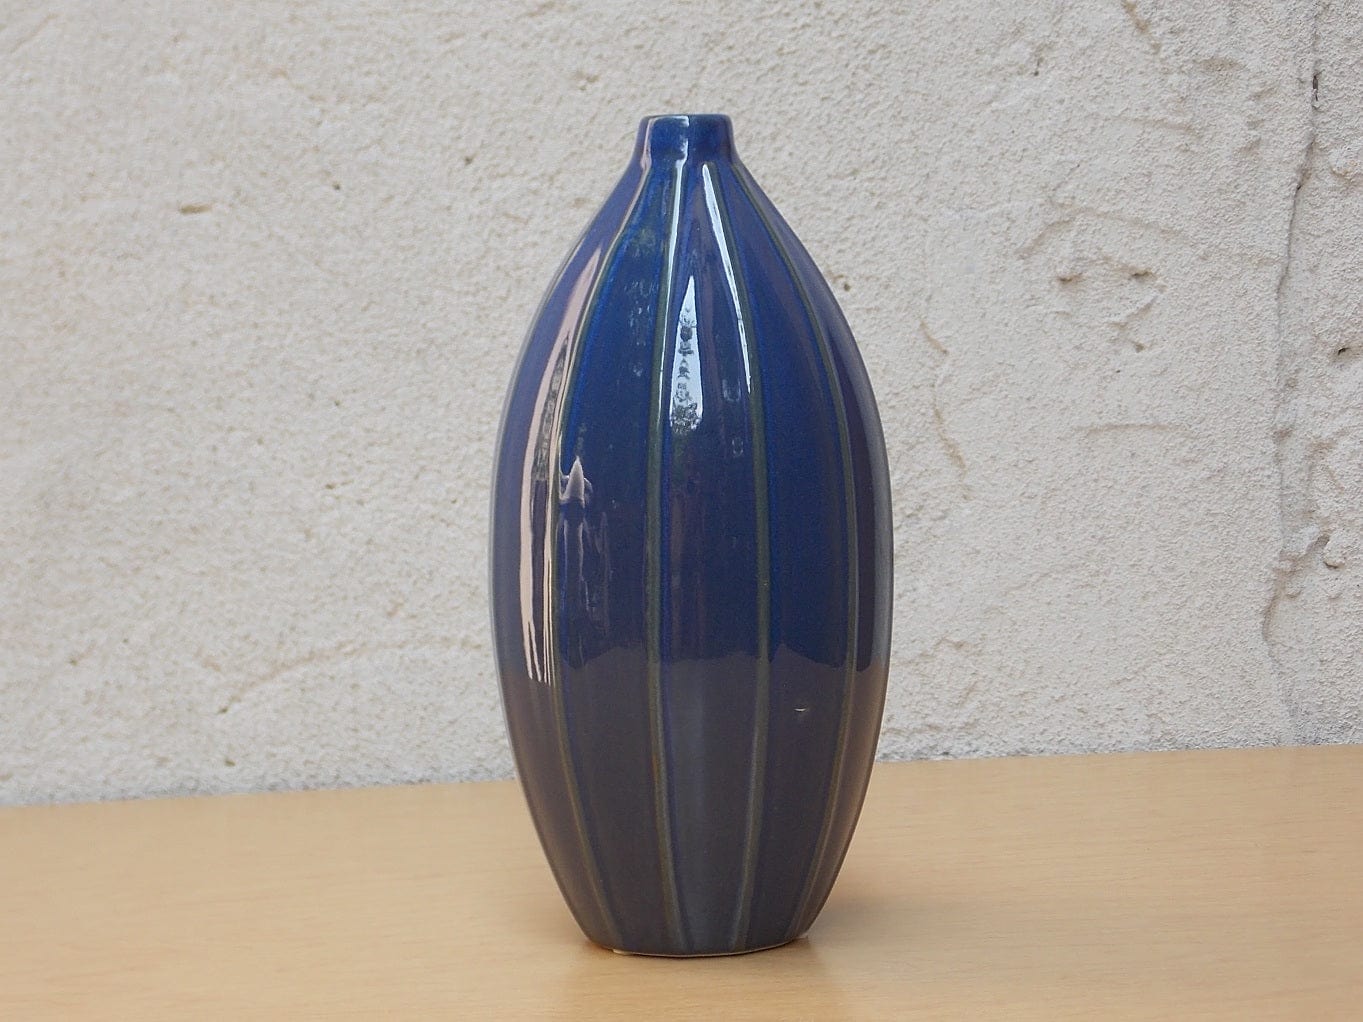 I Like Mike's Mid Century Modern Wall Decor & Art Medium Blue Ceramic Modern Teardrop Bud Vase